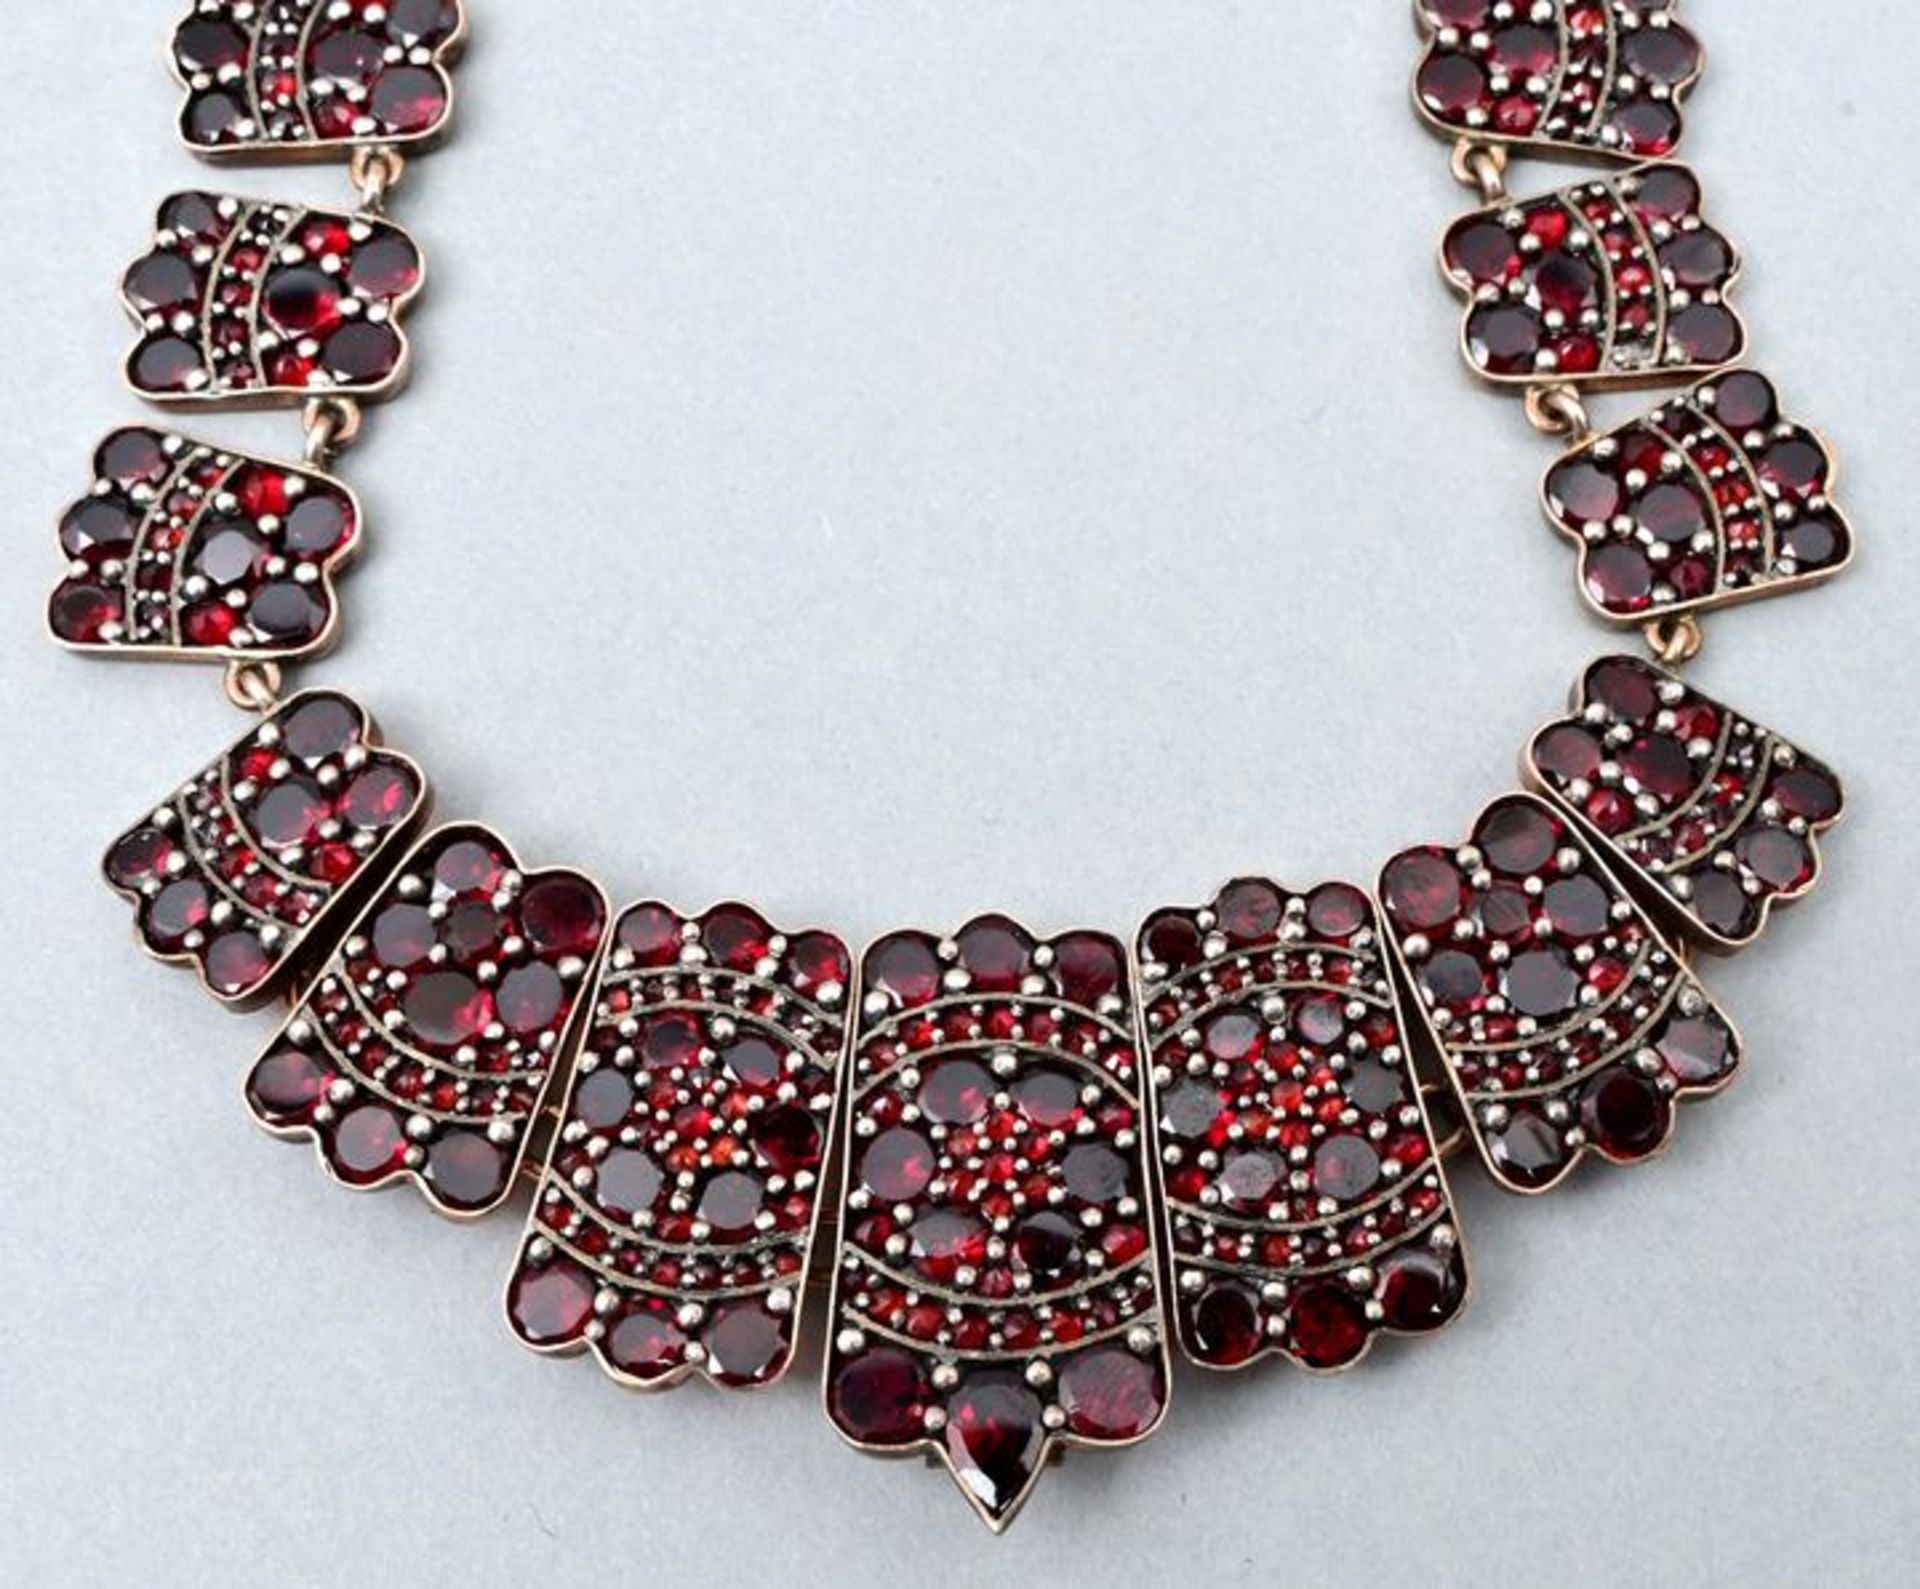 Halskette, Granat / Garnet necklace - Bild 3 aus 3